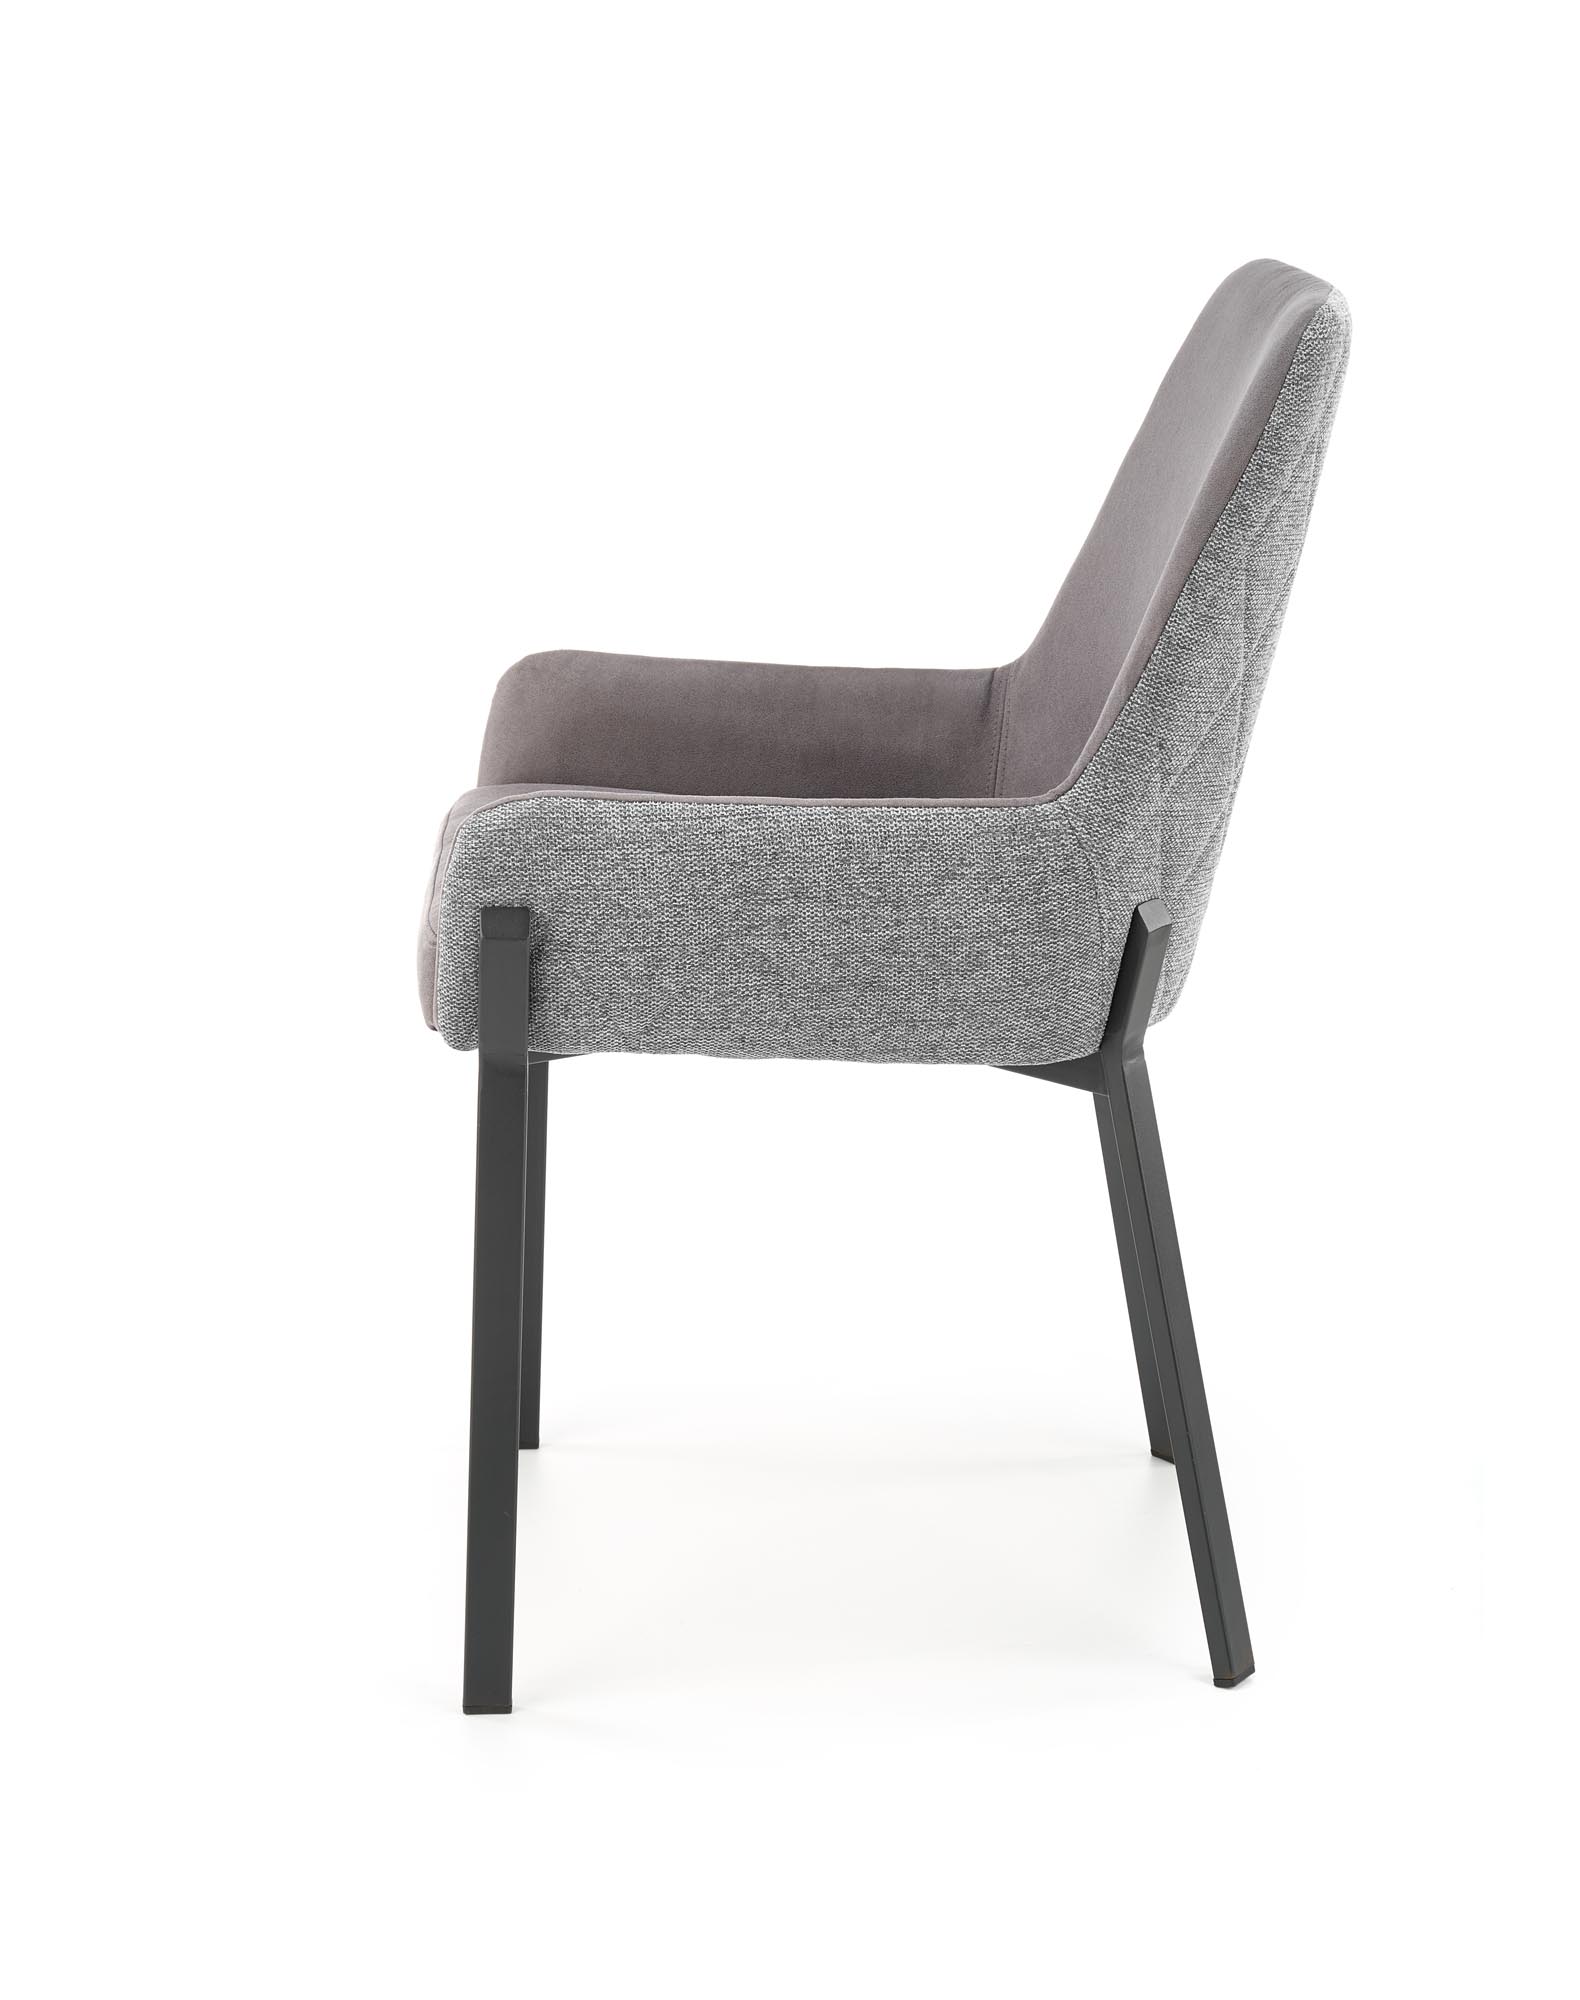 K439 stolica, boja: tamno siva / siva